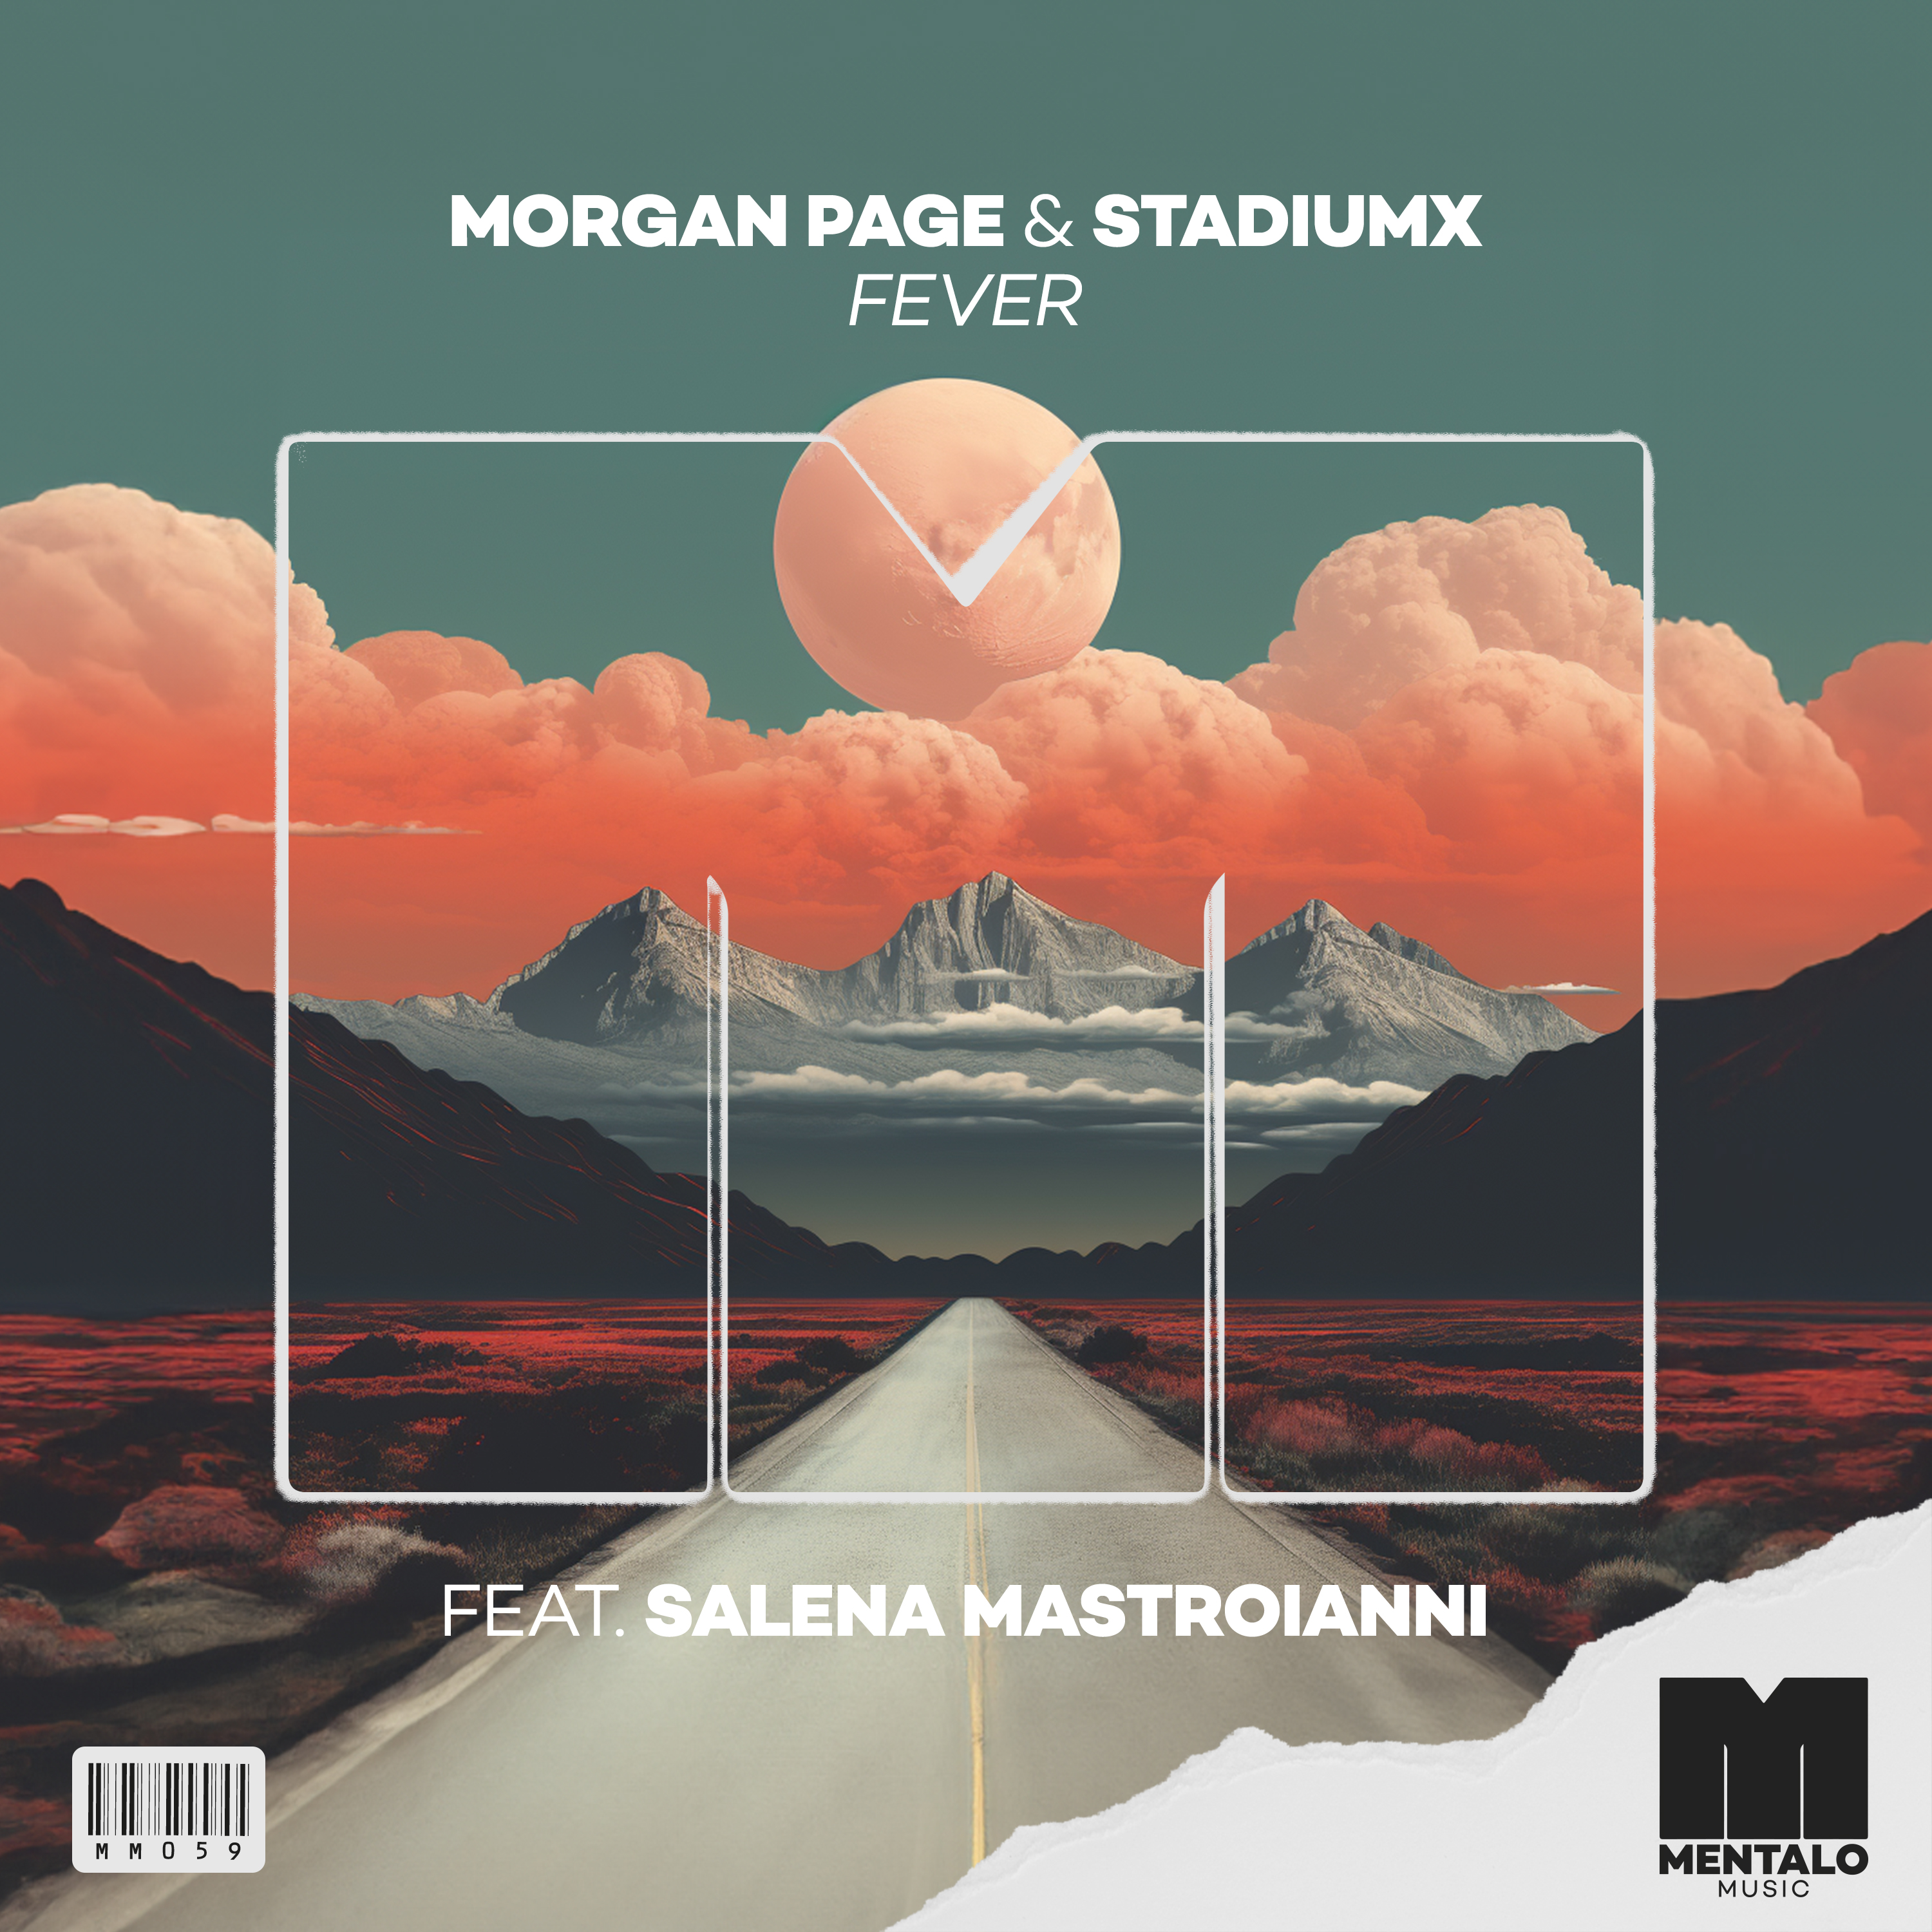 Morgan Page & Stadiumx featuring Salena Mastroianni — Fever cover artwork